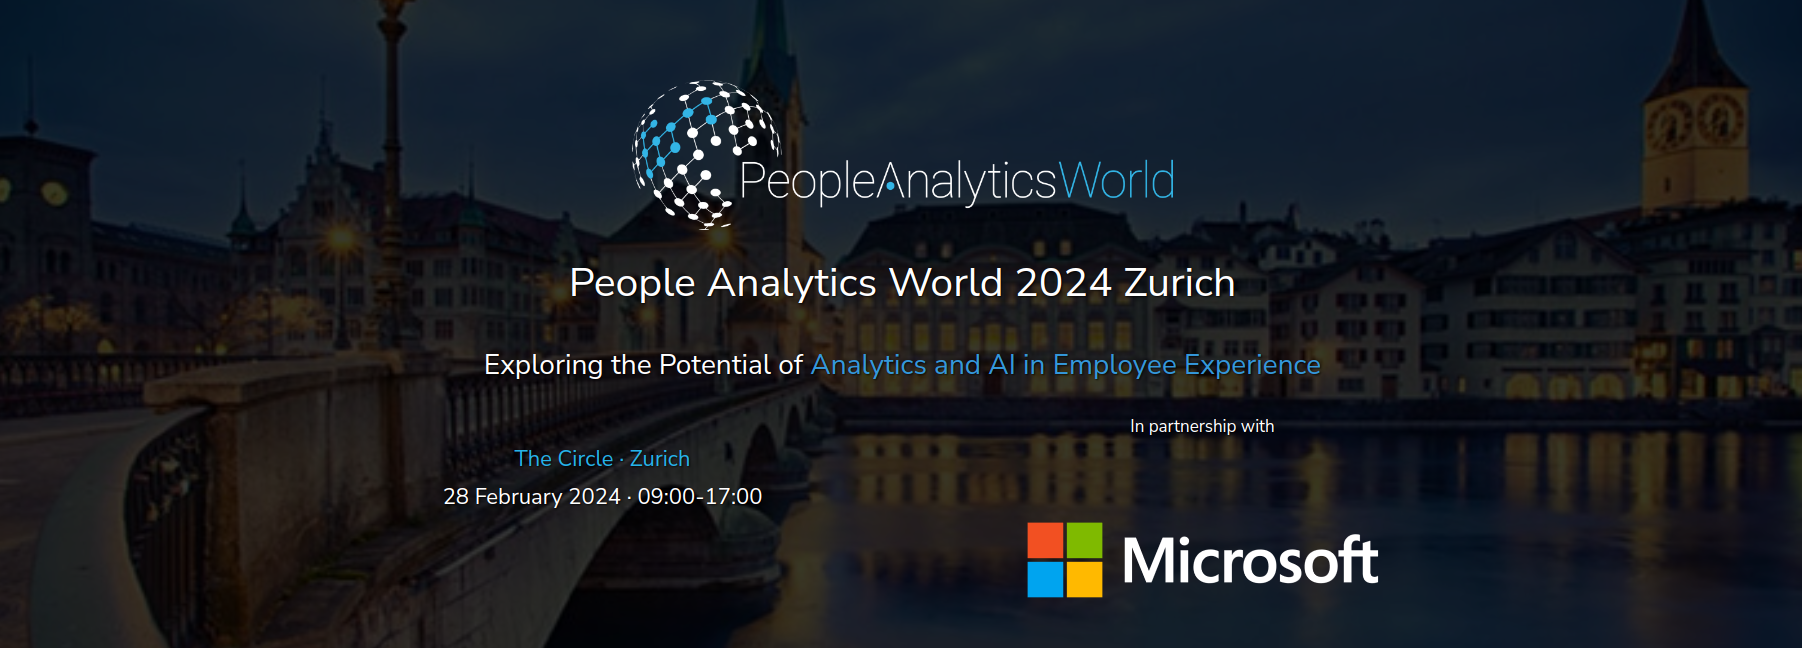 People Analytics World 2024 Zurich